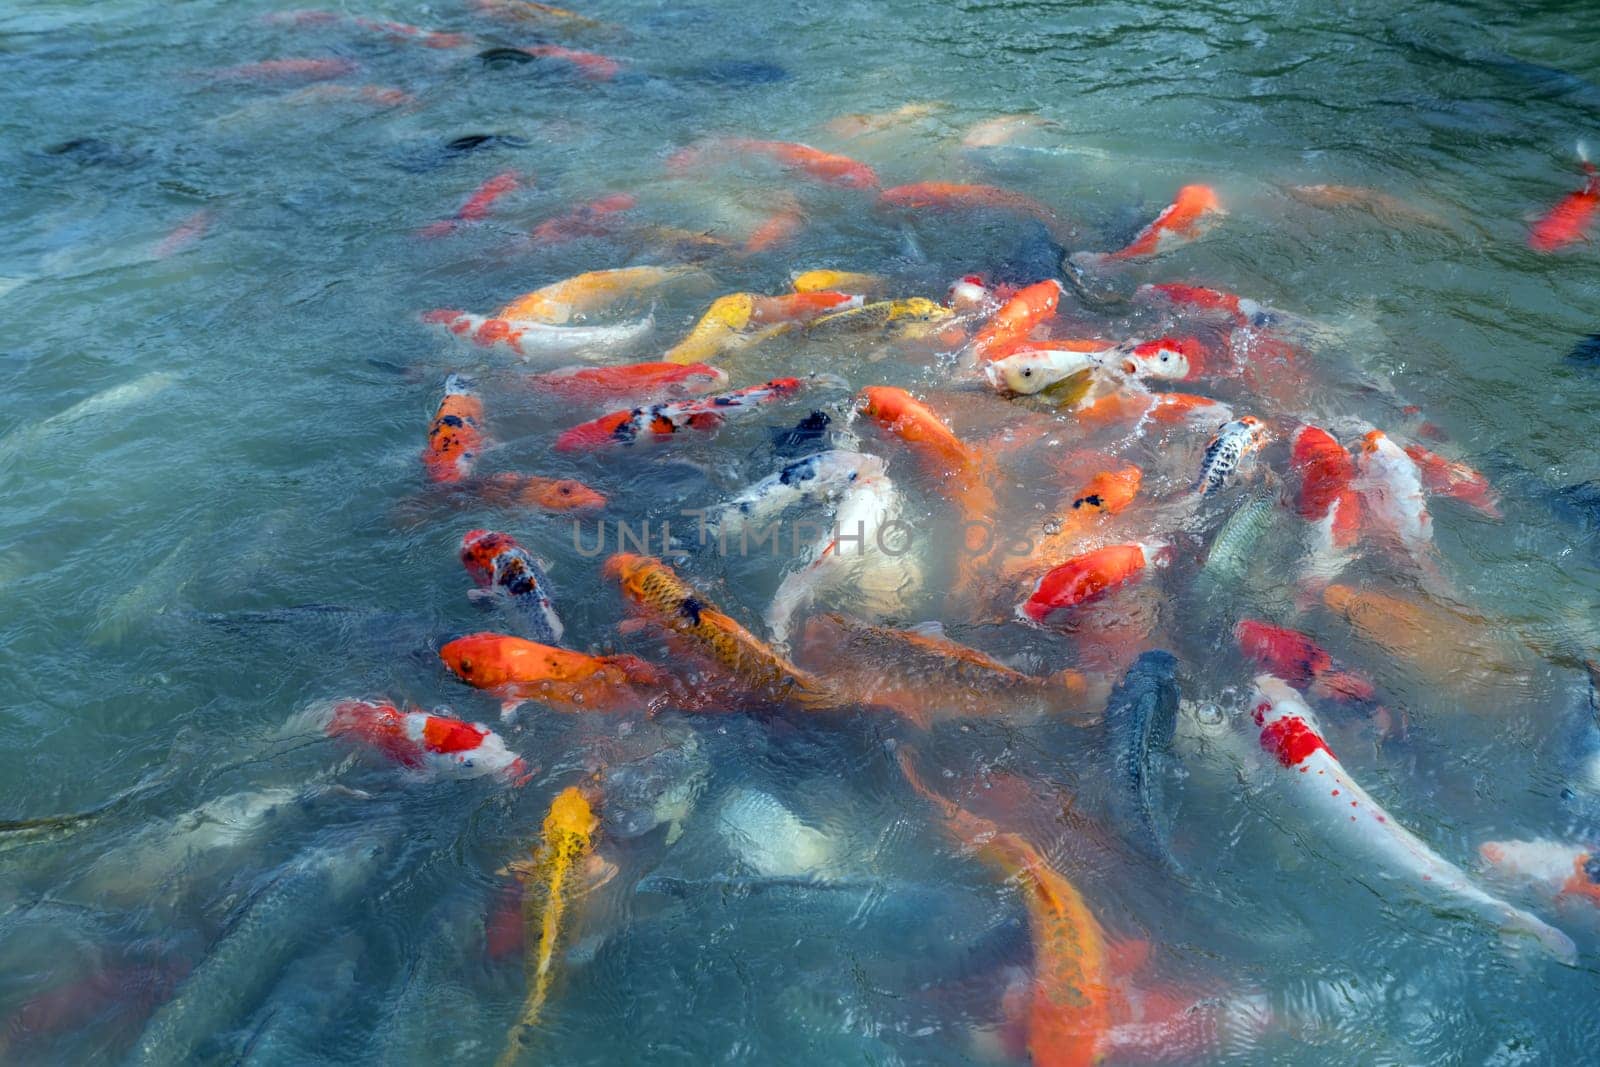 Image of fishes named Cyprinus carpio. Phuket, Thailand